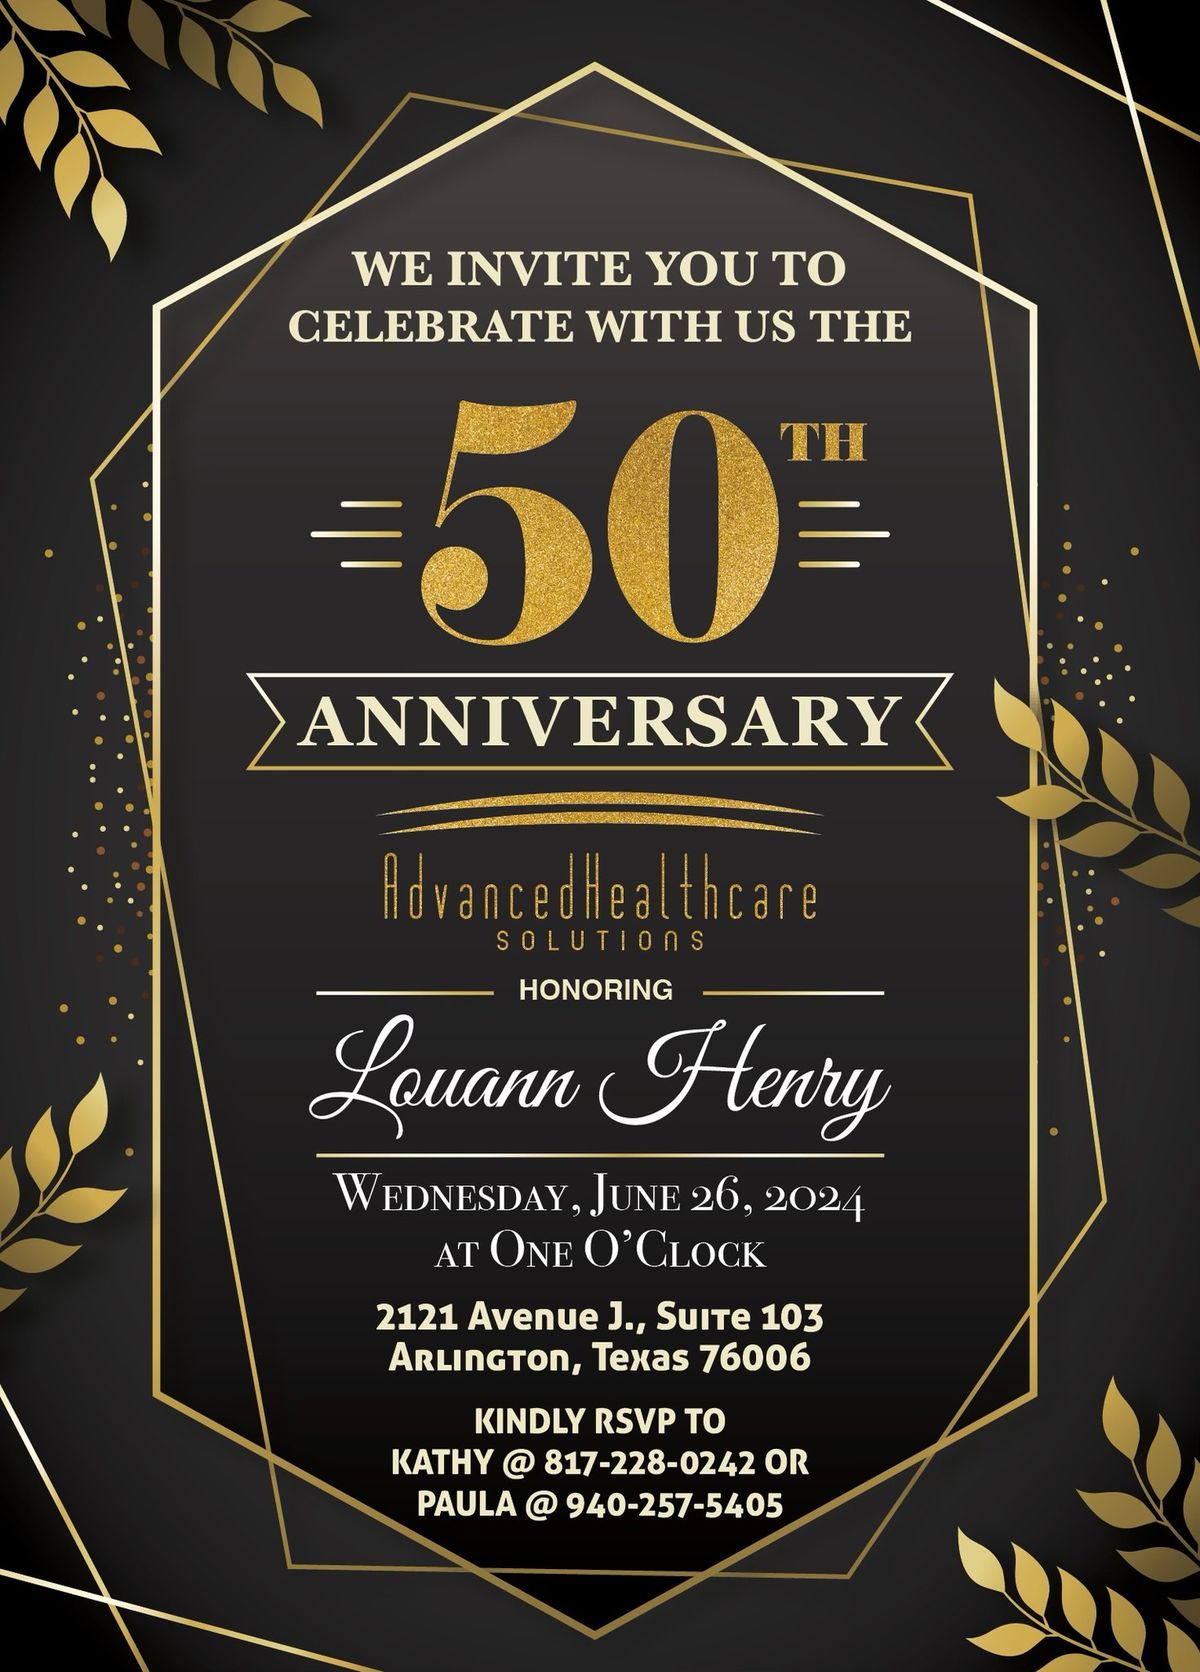 50th Anniversary for Louann Henry